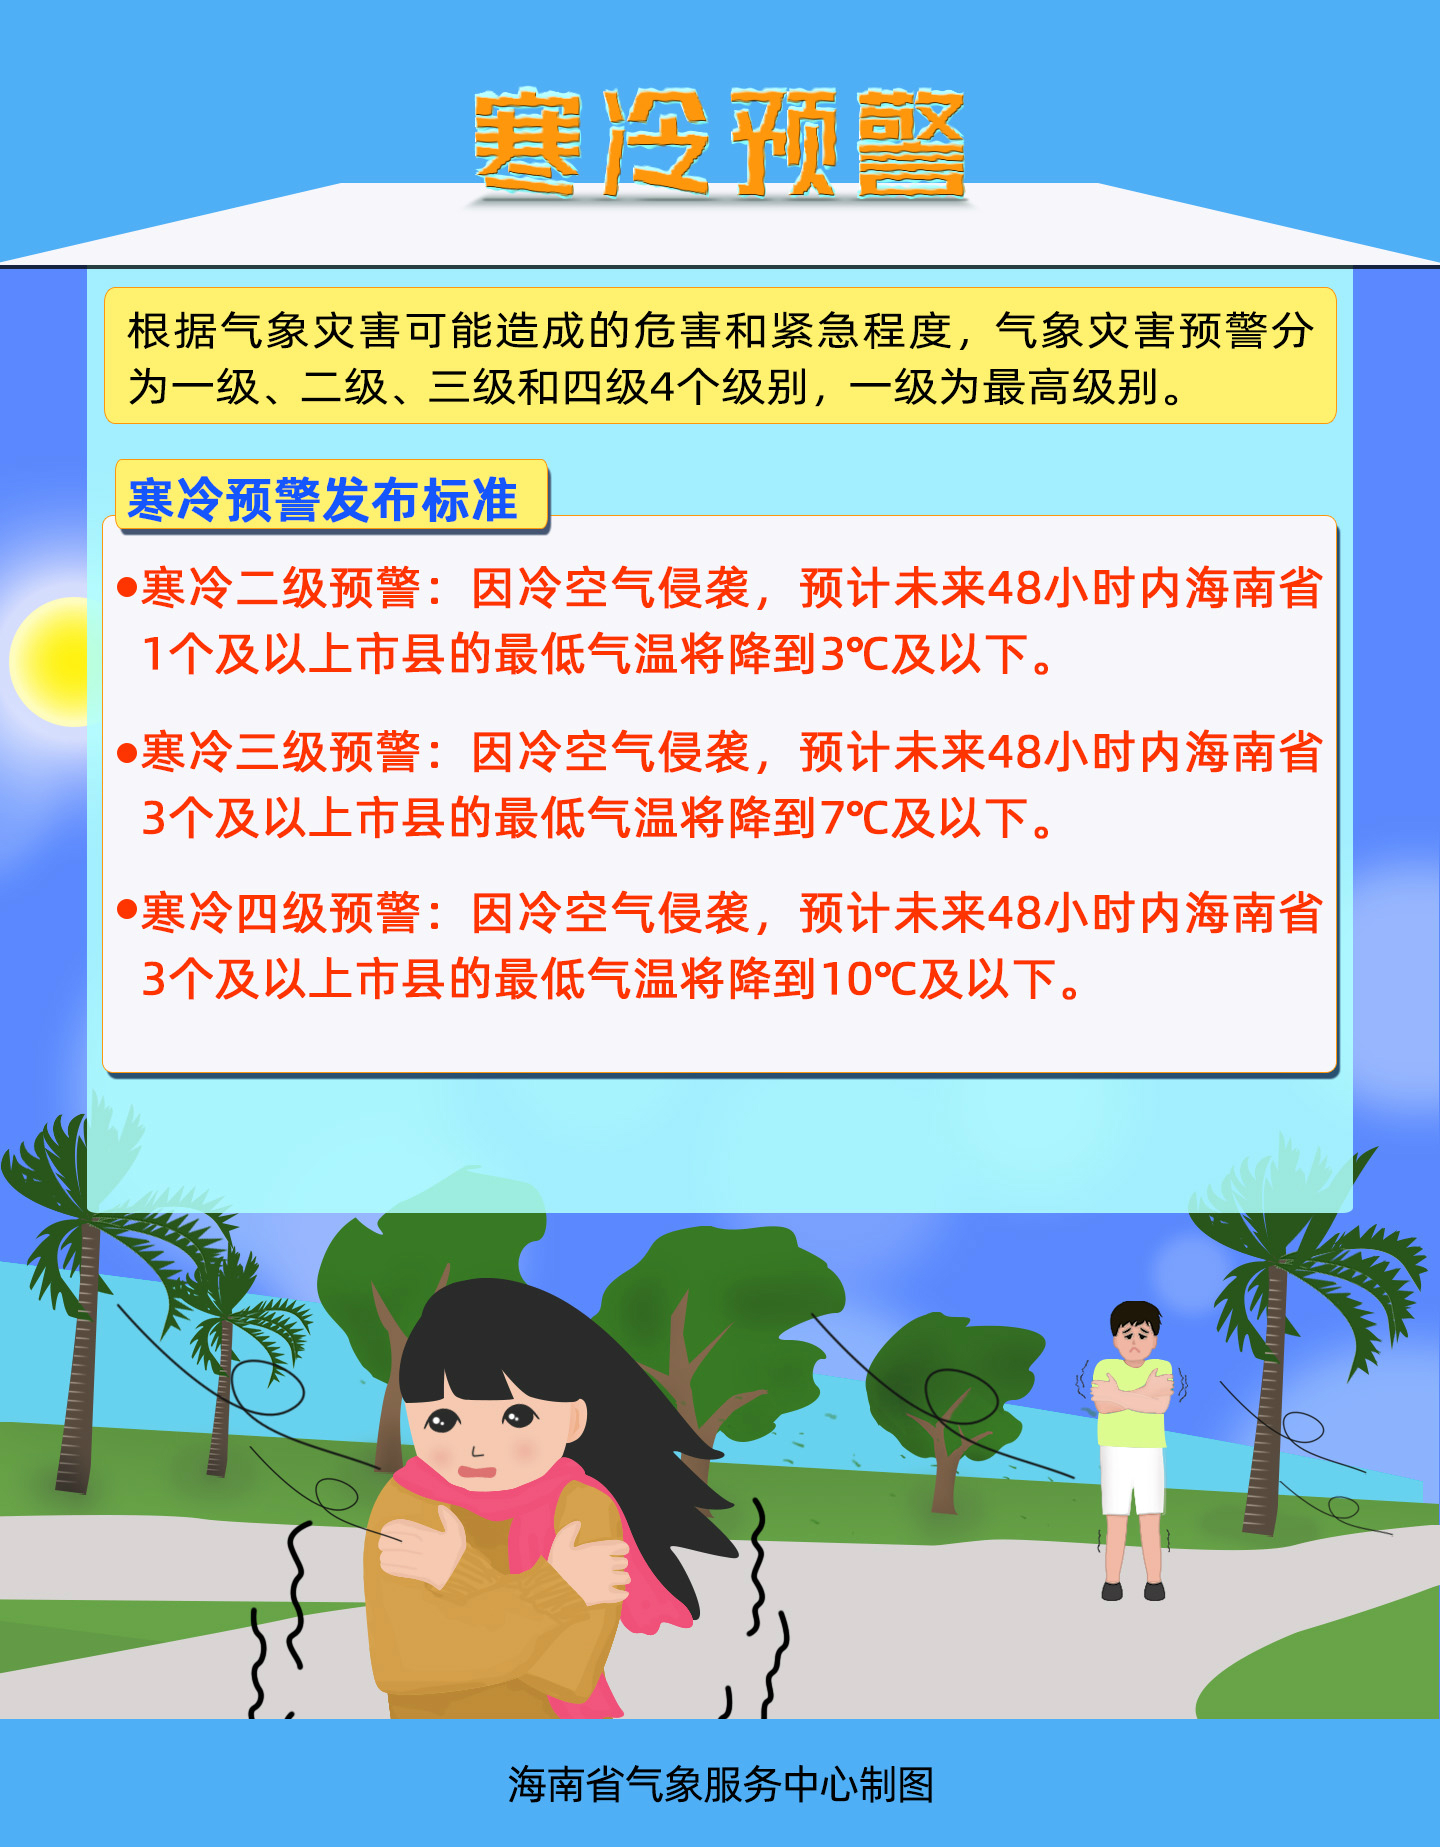 海南省气象局2021年01月07日10时40分发布寒冷四级预警